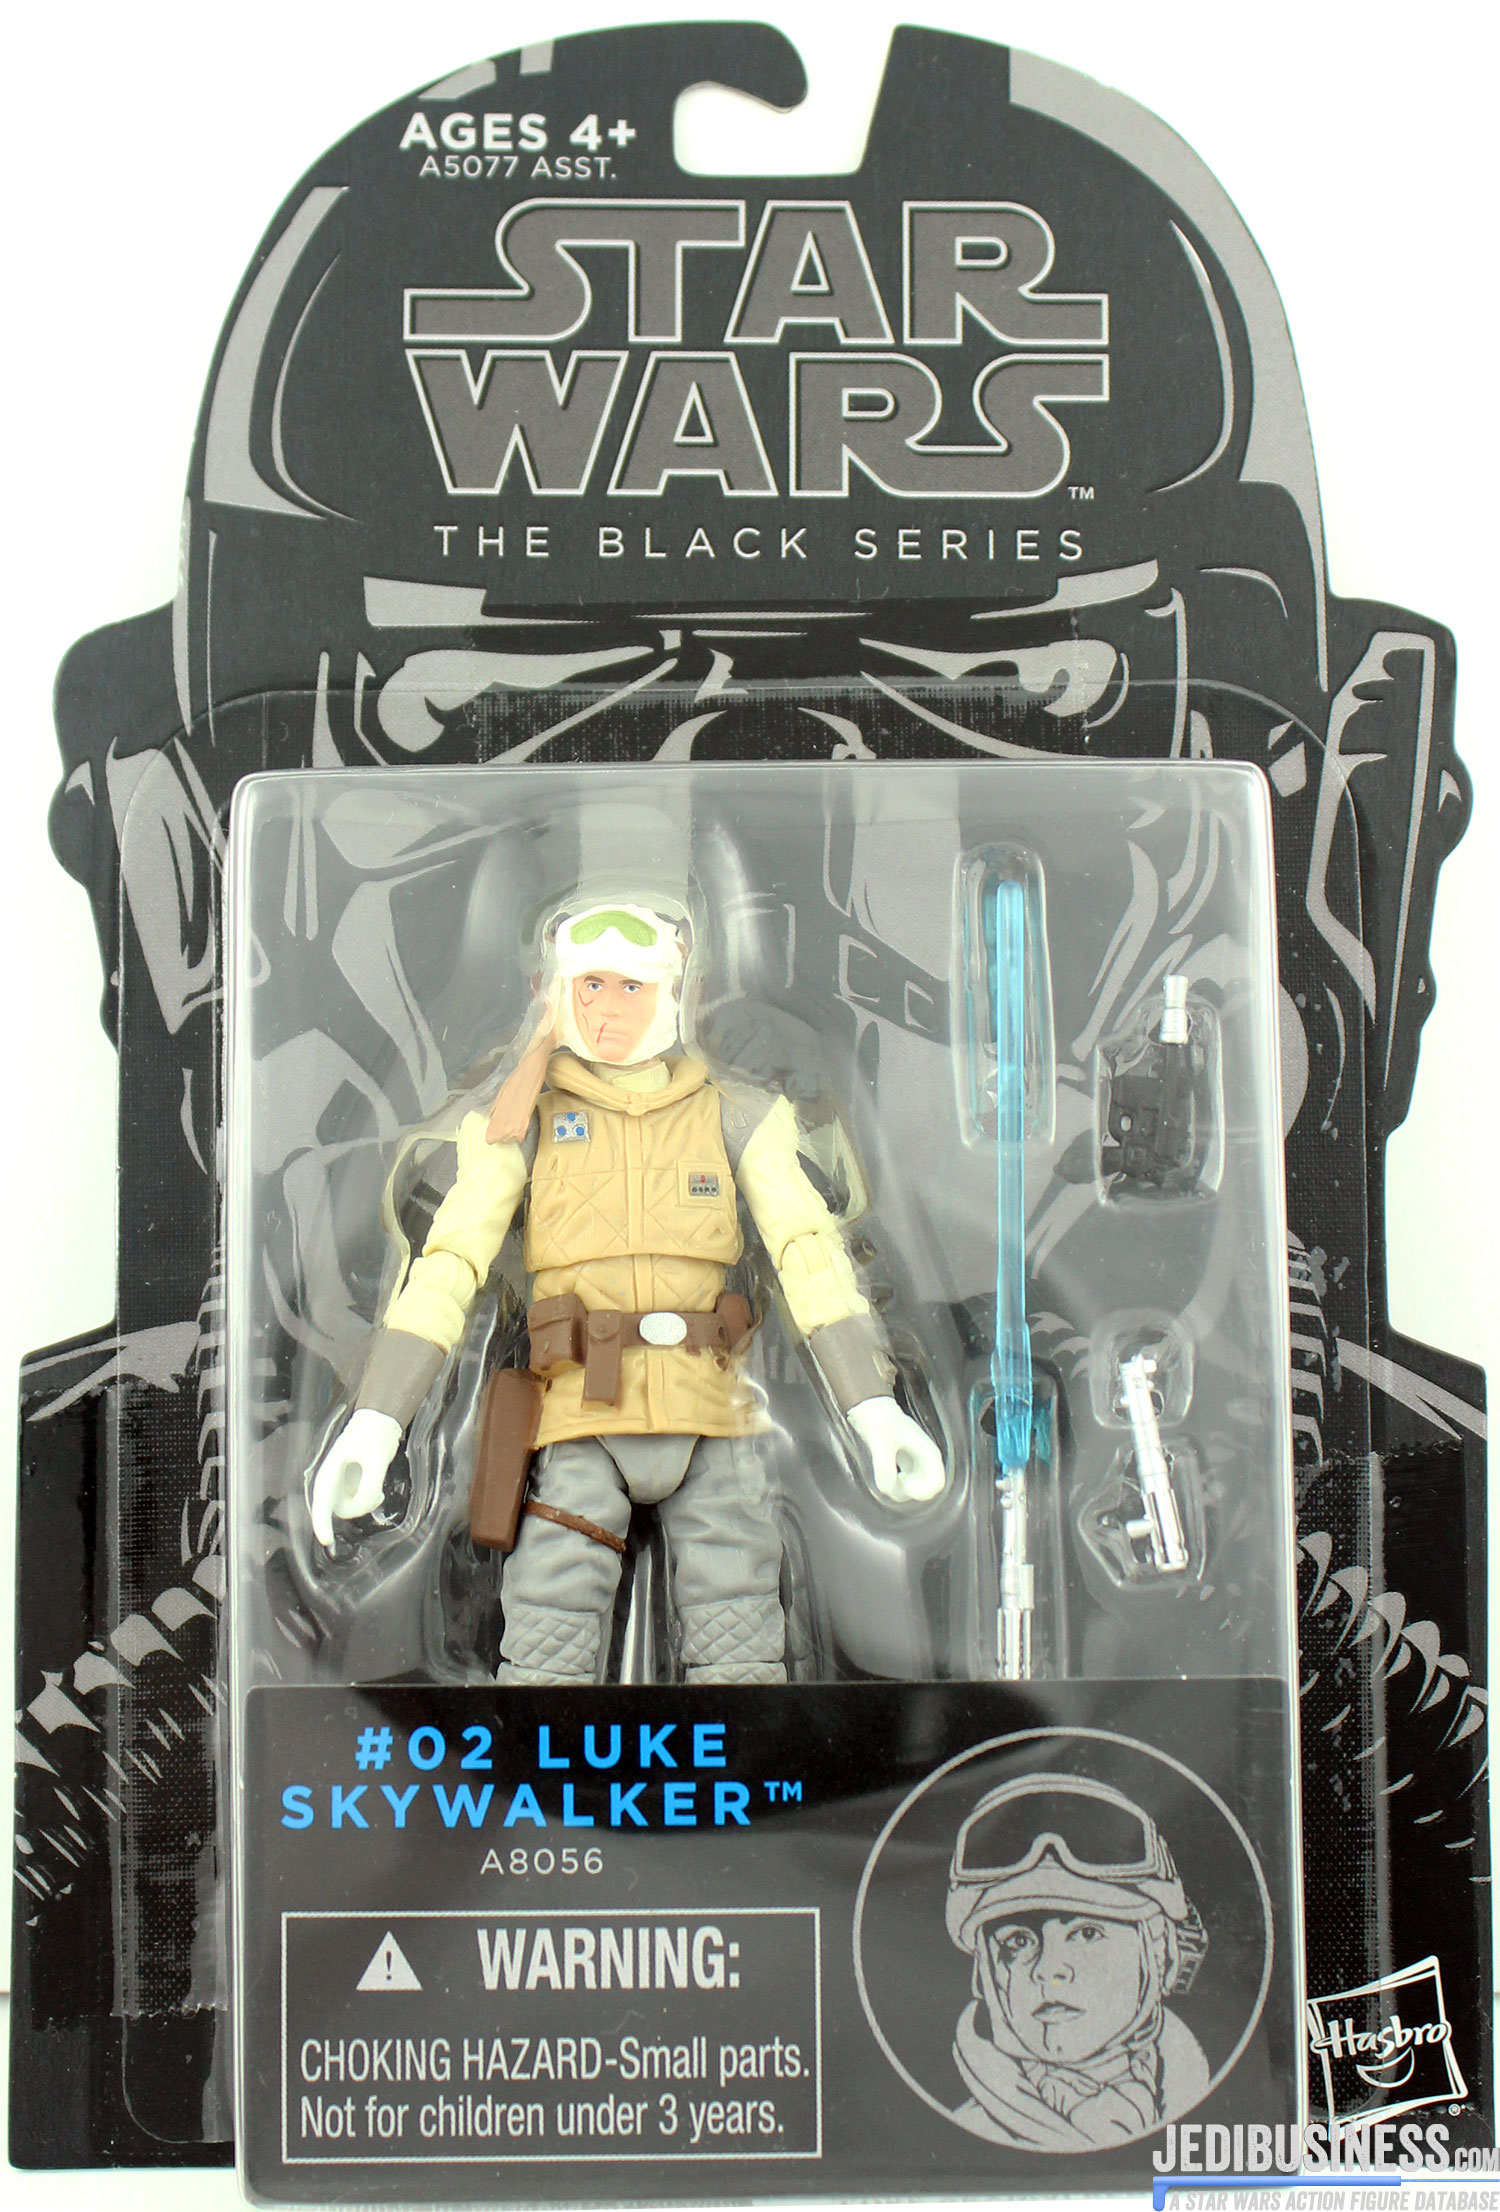 Luke Skywalker Wampa Attack!